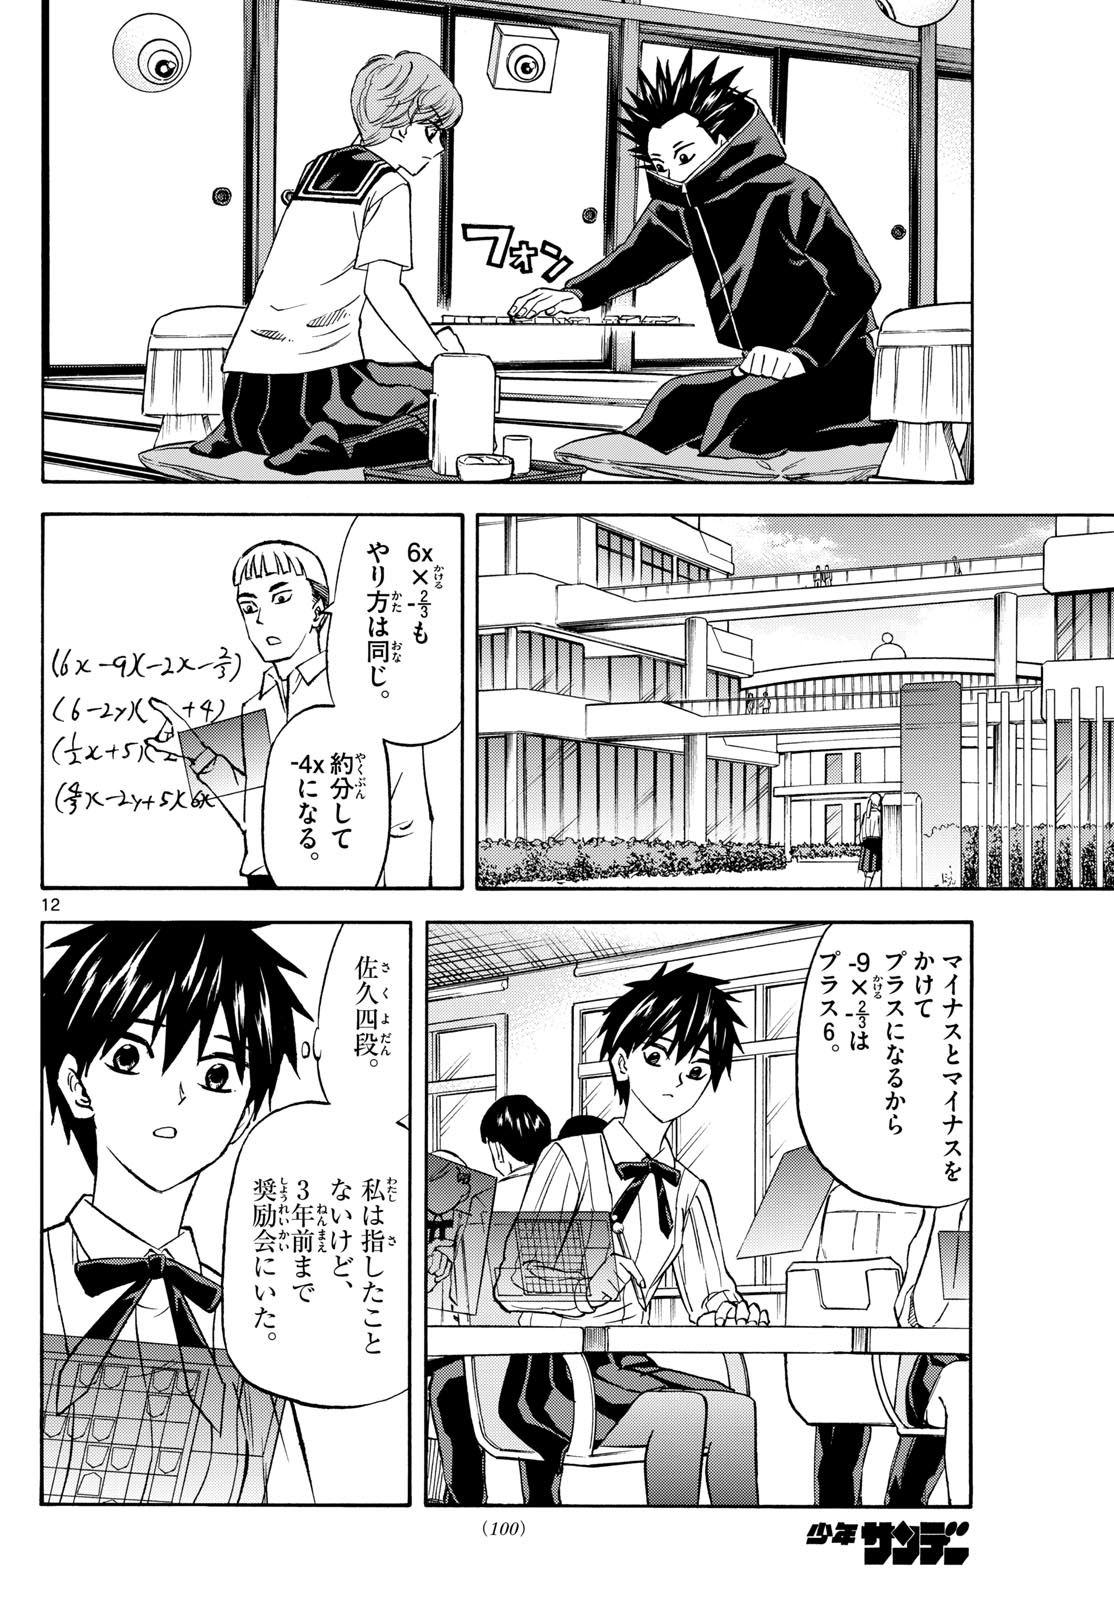 Tatsu to Ichigo - Chapter 191 - Page 12